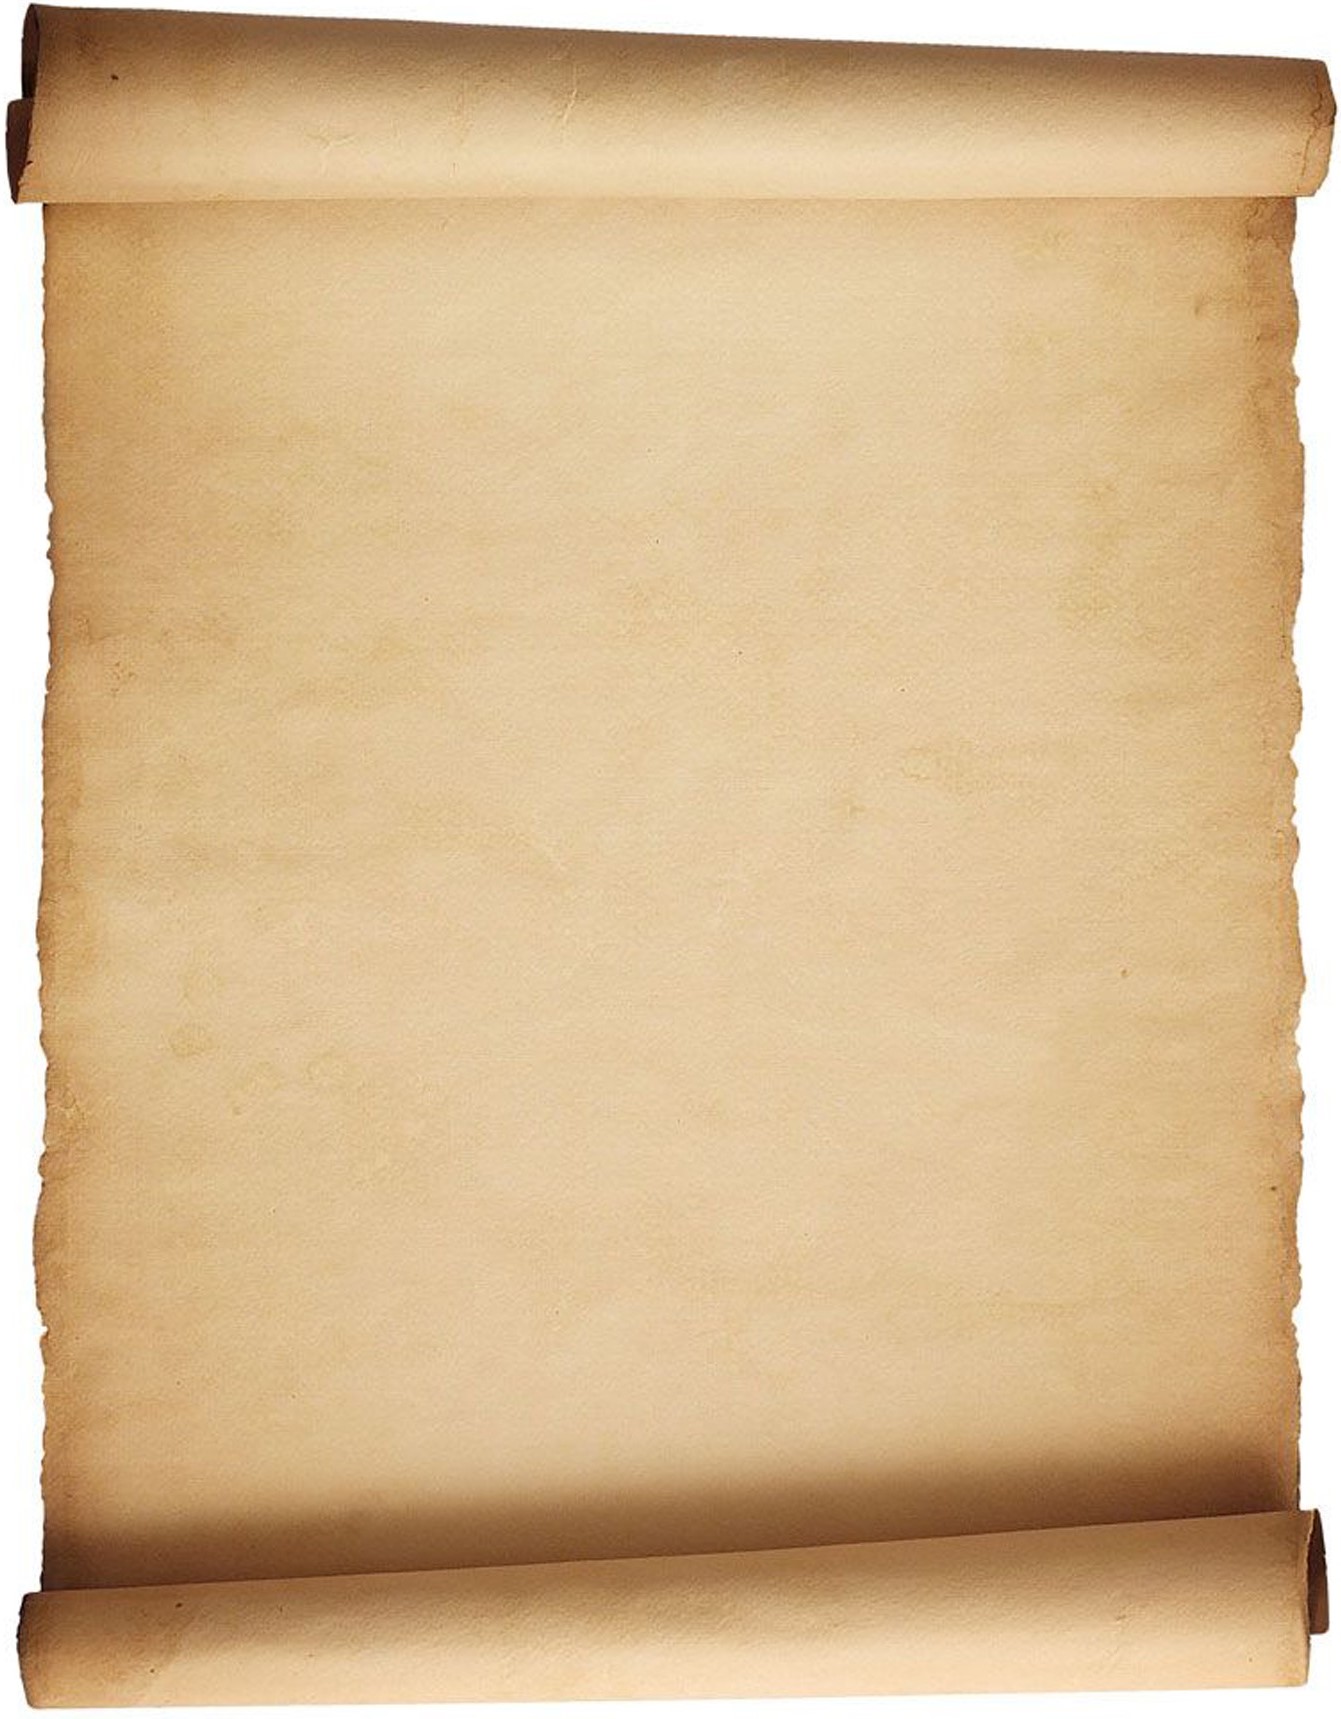 clipart paper parchment paper